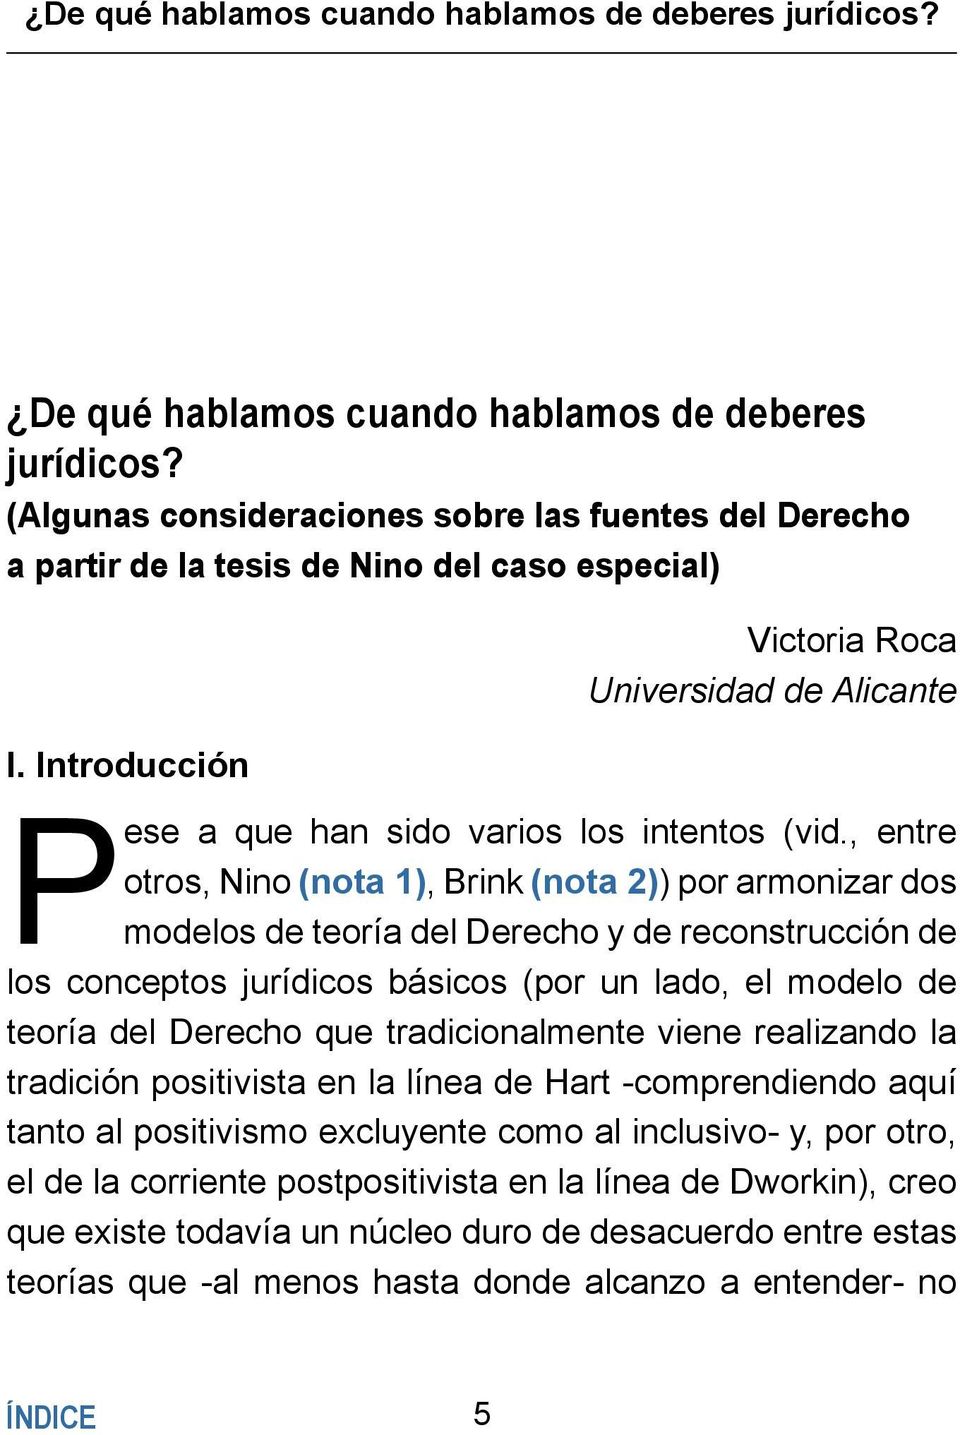 Introducción Victoria Roca Universidad de Alicante Pese a que han sido varios los intentos (vid.